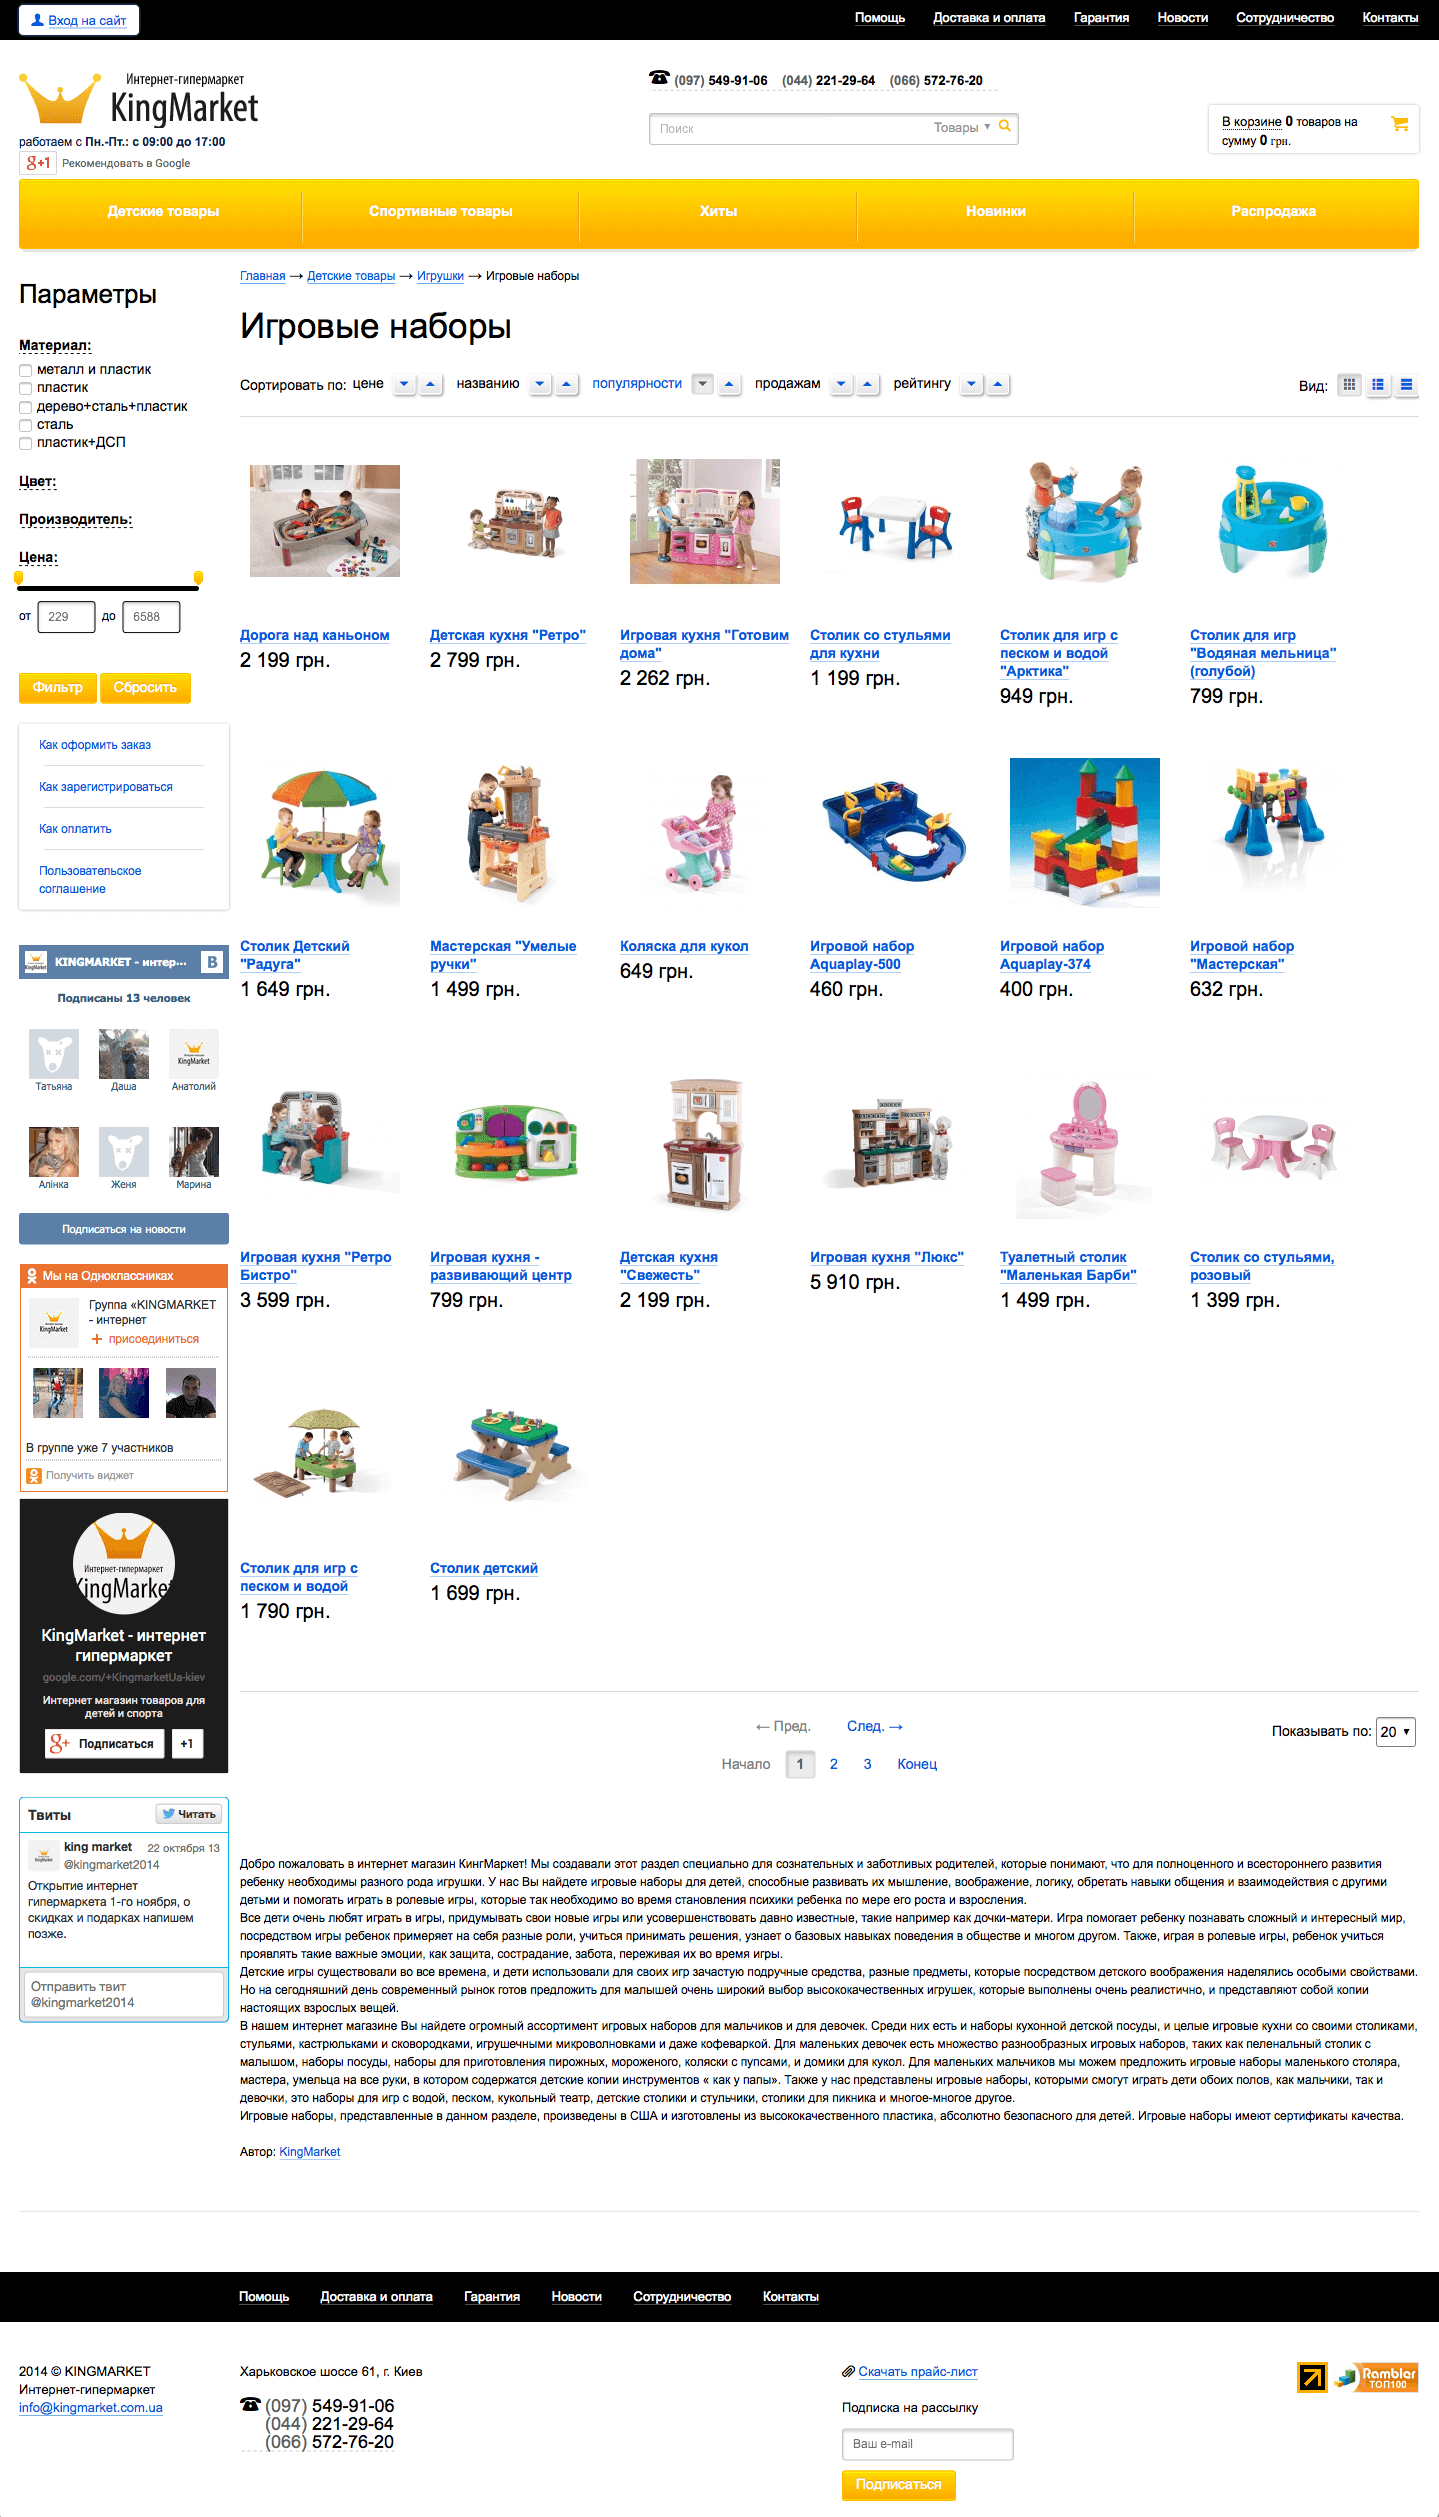 KingMarket - интернет магазин товаров для детей и спорта1